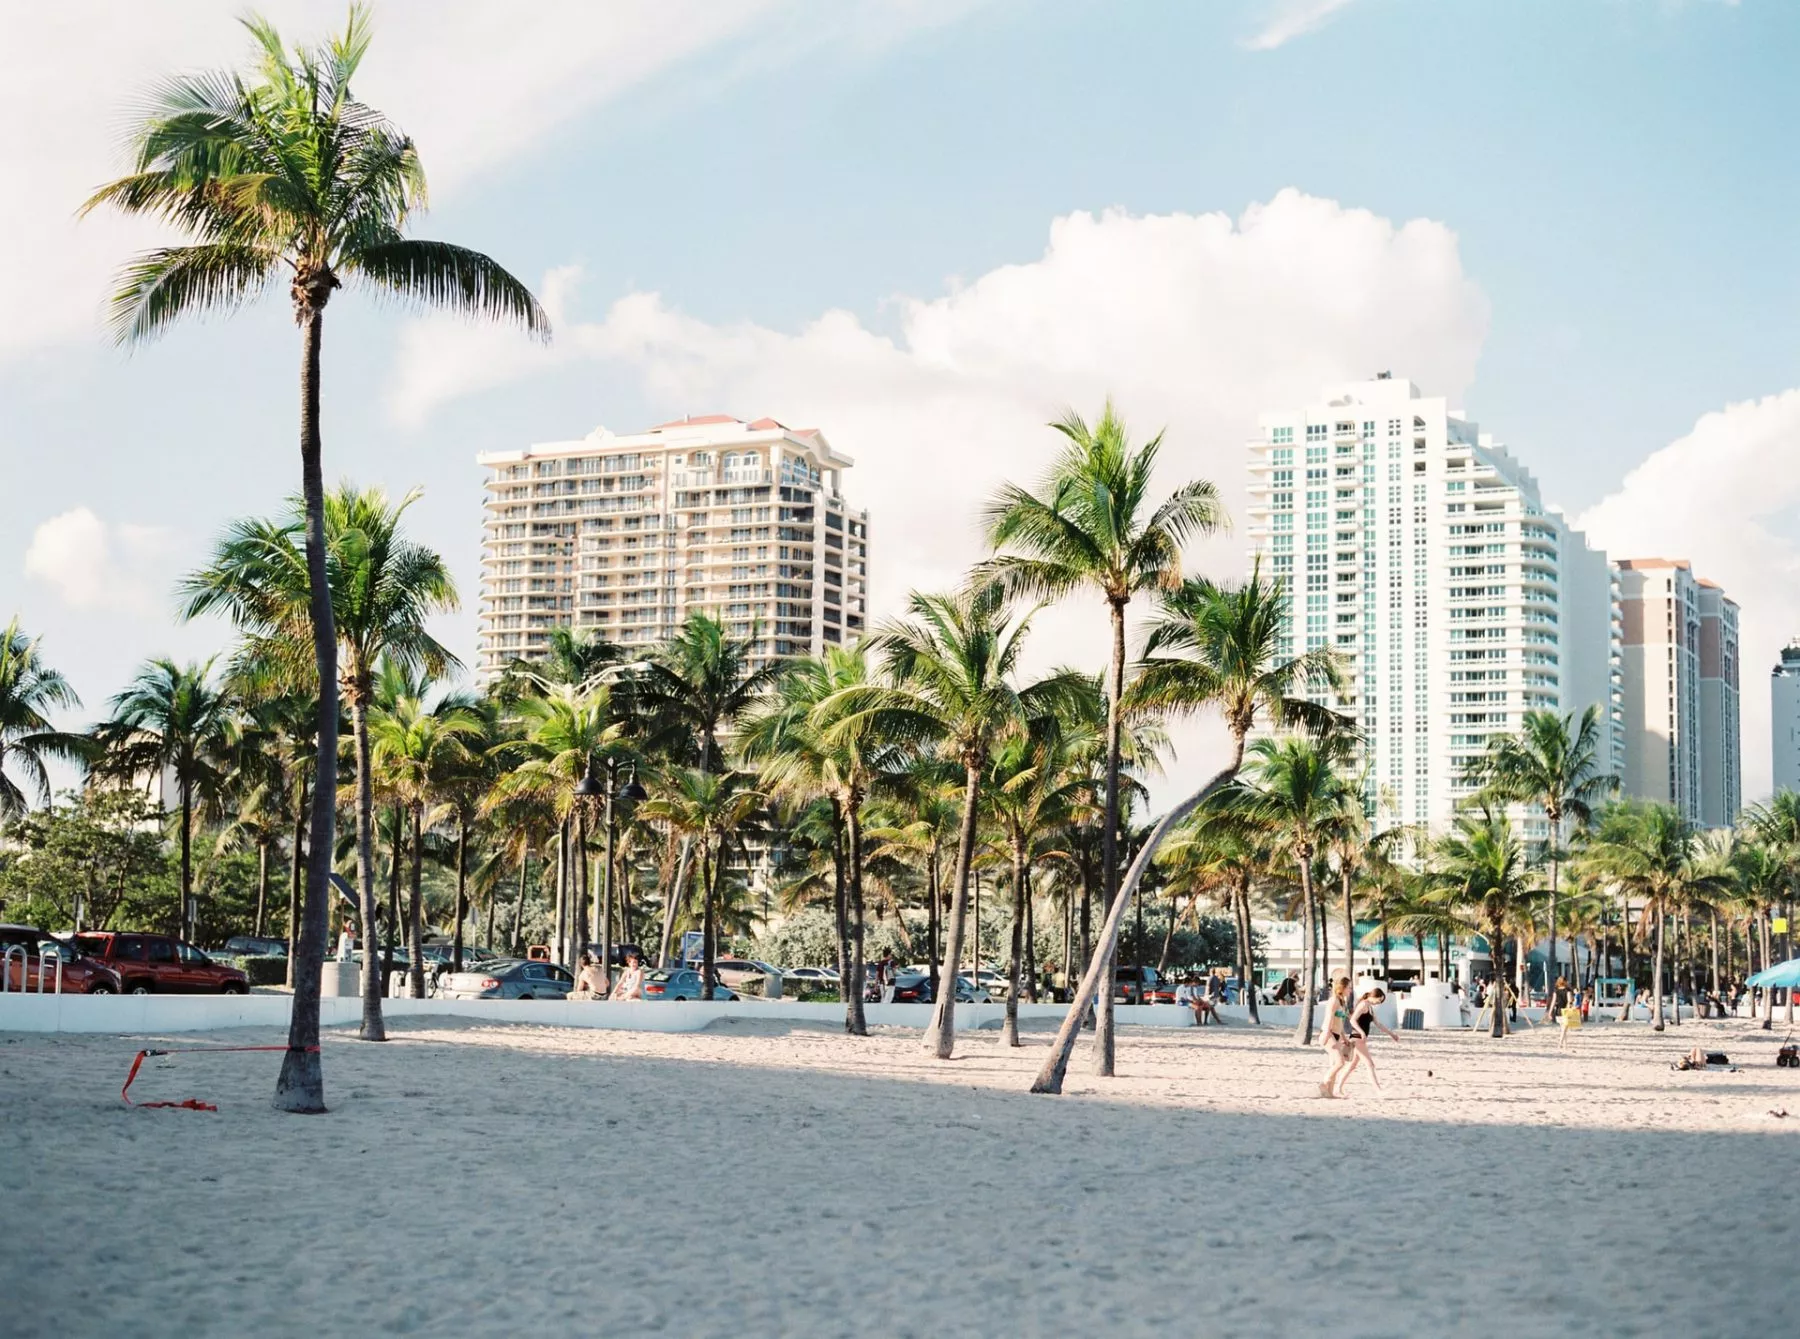 Vastgoedbedrijf Miami start met acceptatie cryptocurrencies voor condos